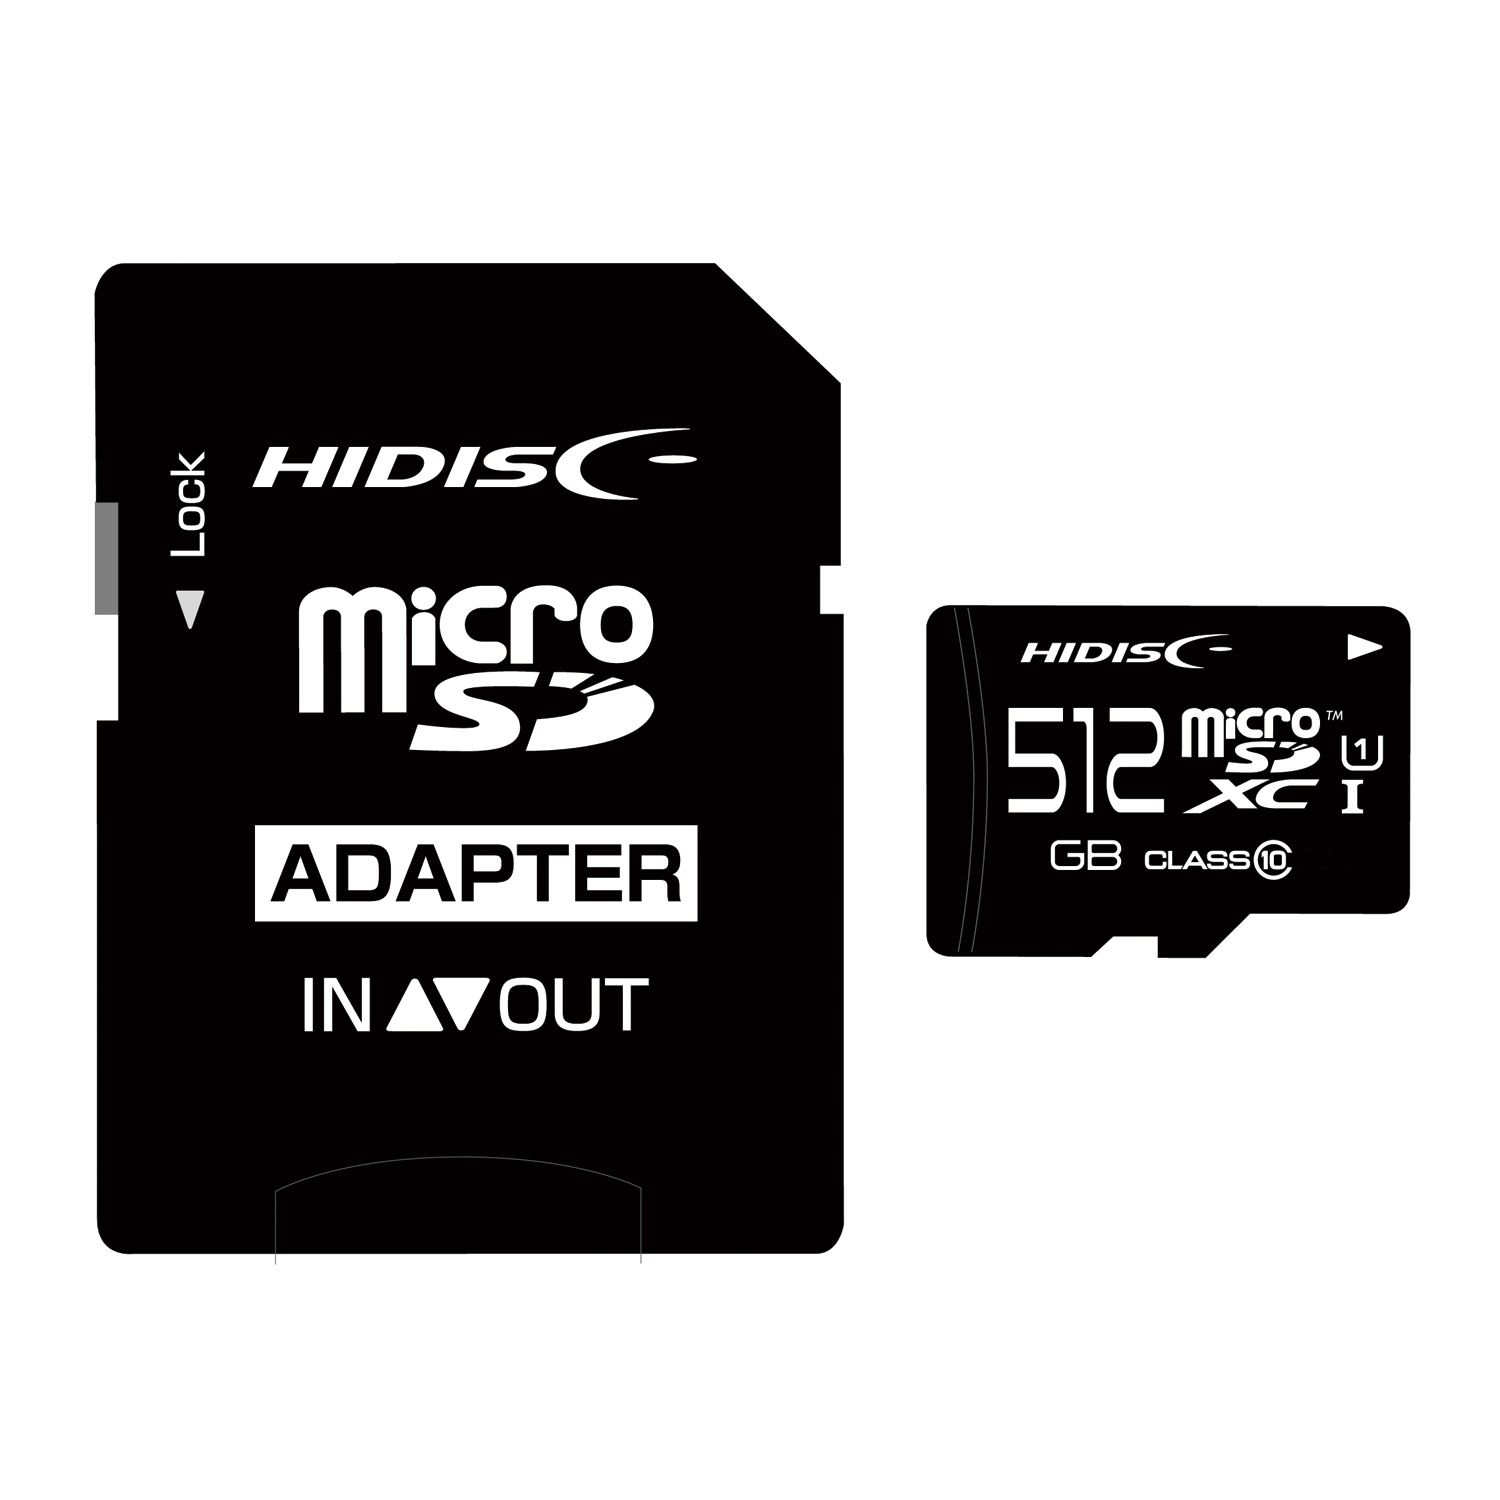 HI-DISC HDMCSDX512GCL10UIJP3 [512GB]